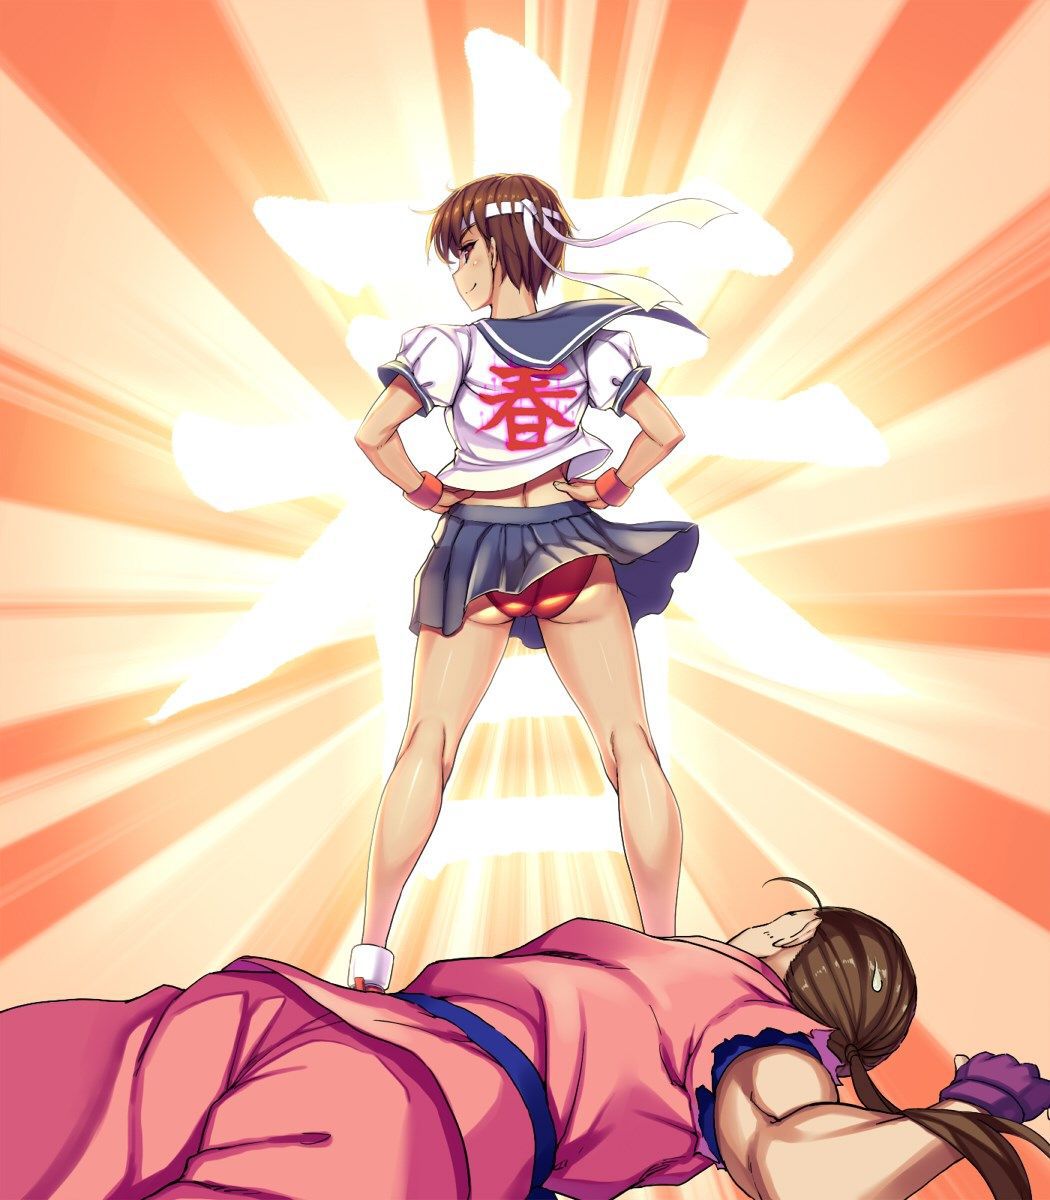 [2次] kasugano Sakura Street Fighter V, if still in red bloomers 17